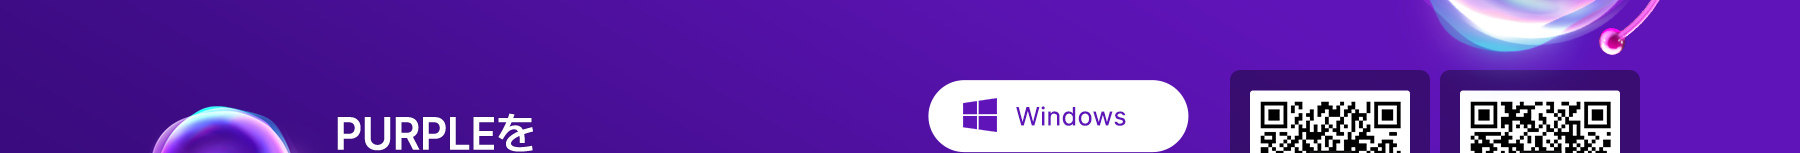 purple_notice_02